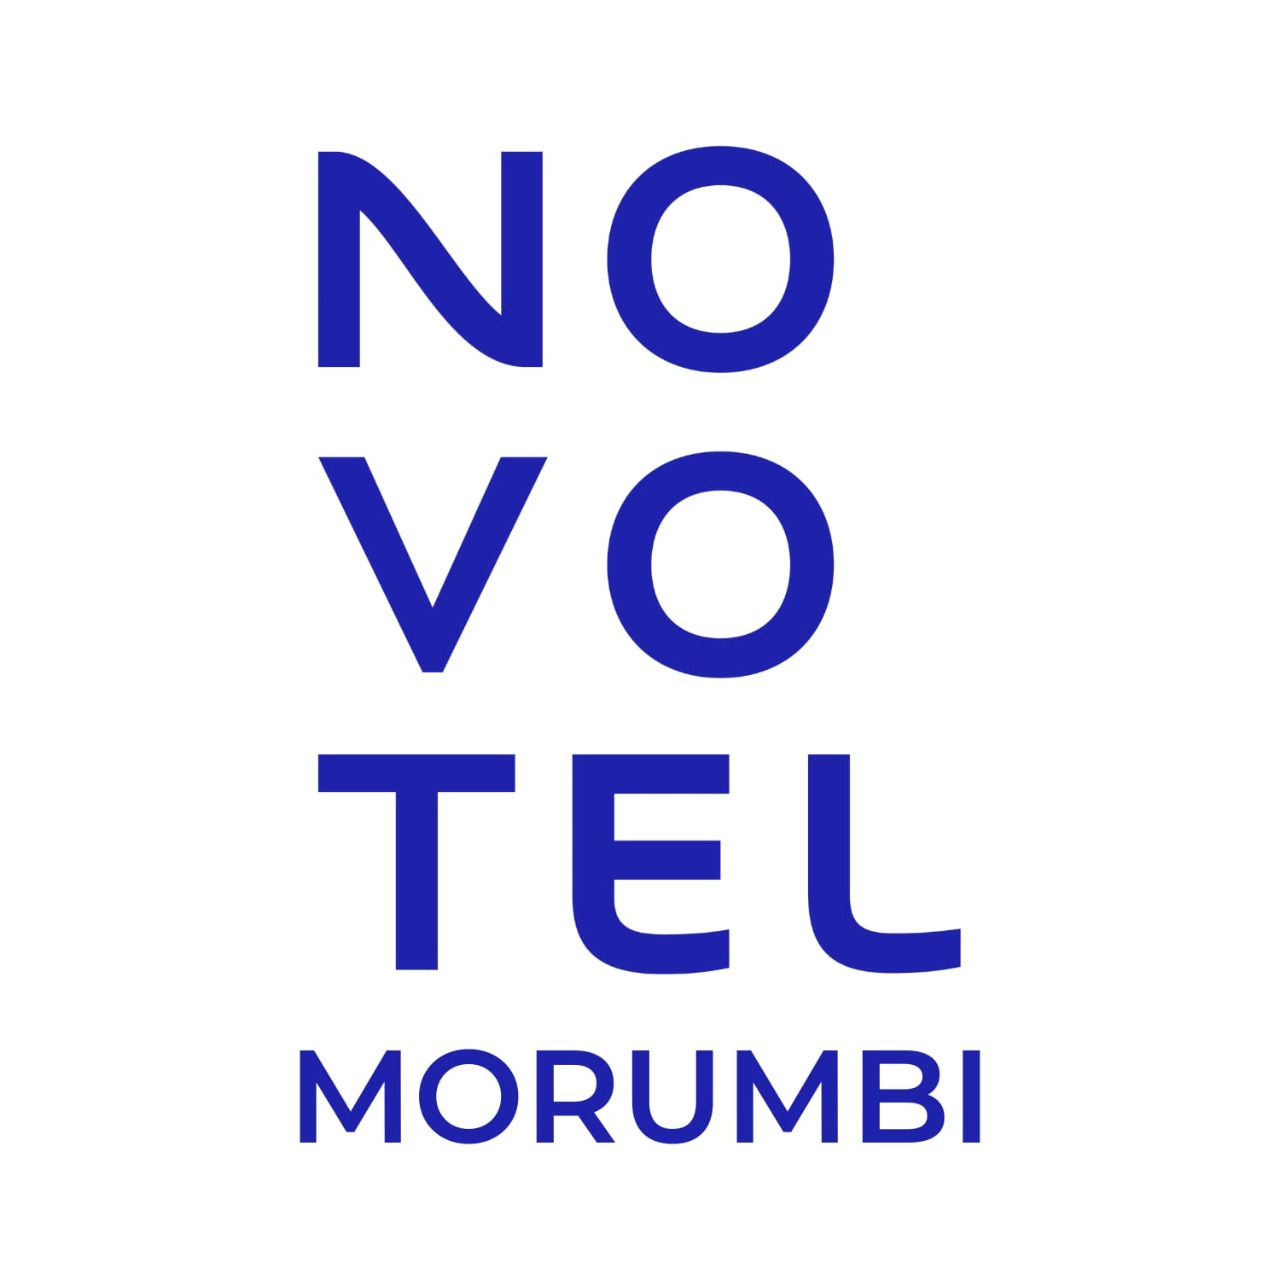 Novotel Morumbi